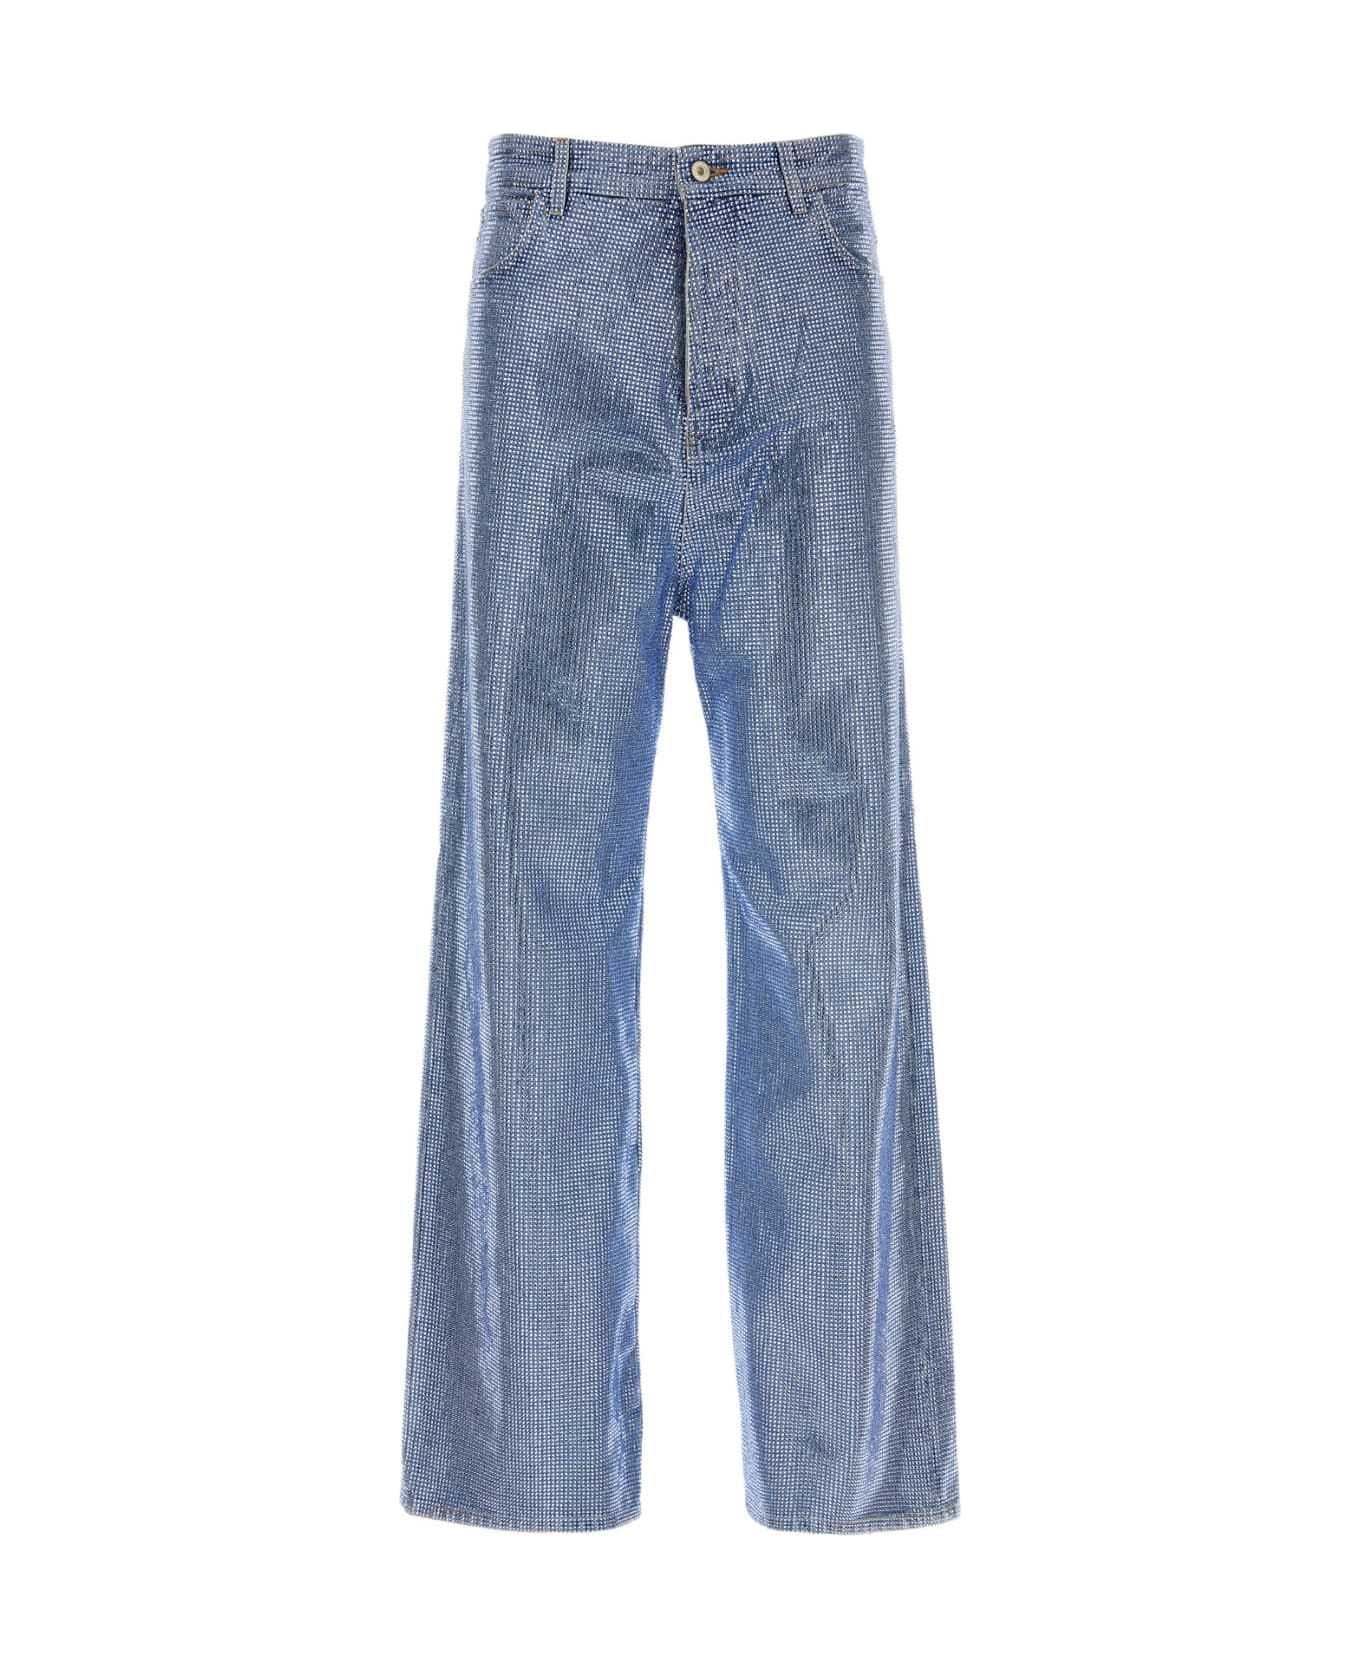 Loewe Embellished Denim Jeans - WASHEDDENIM